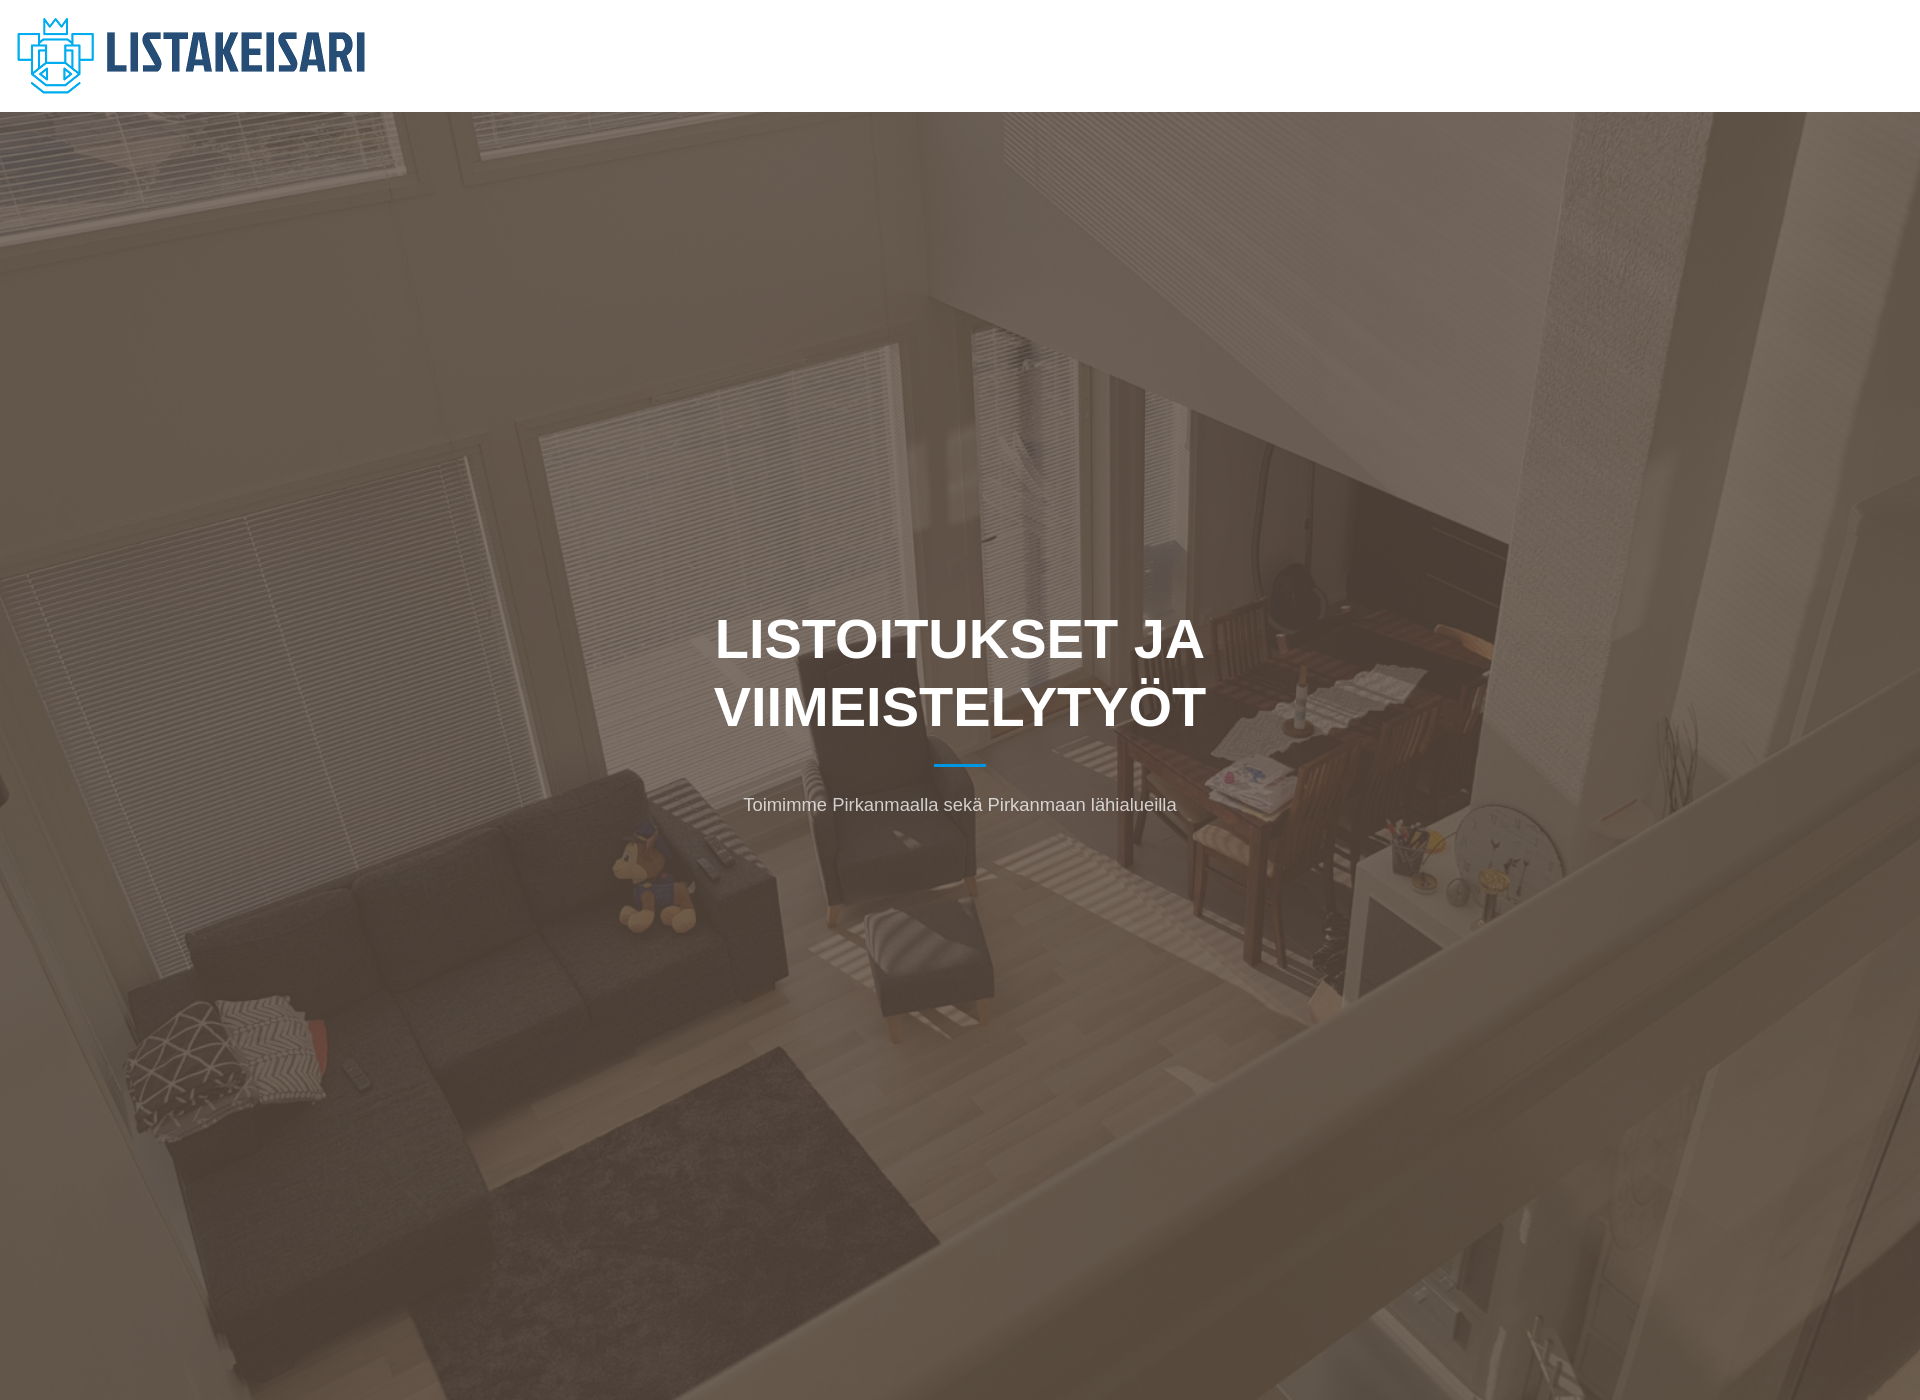 Screenshot for listakeisari.fi